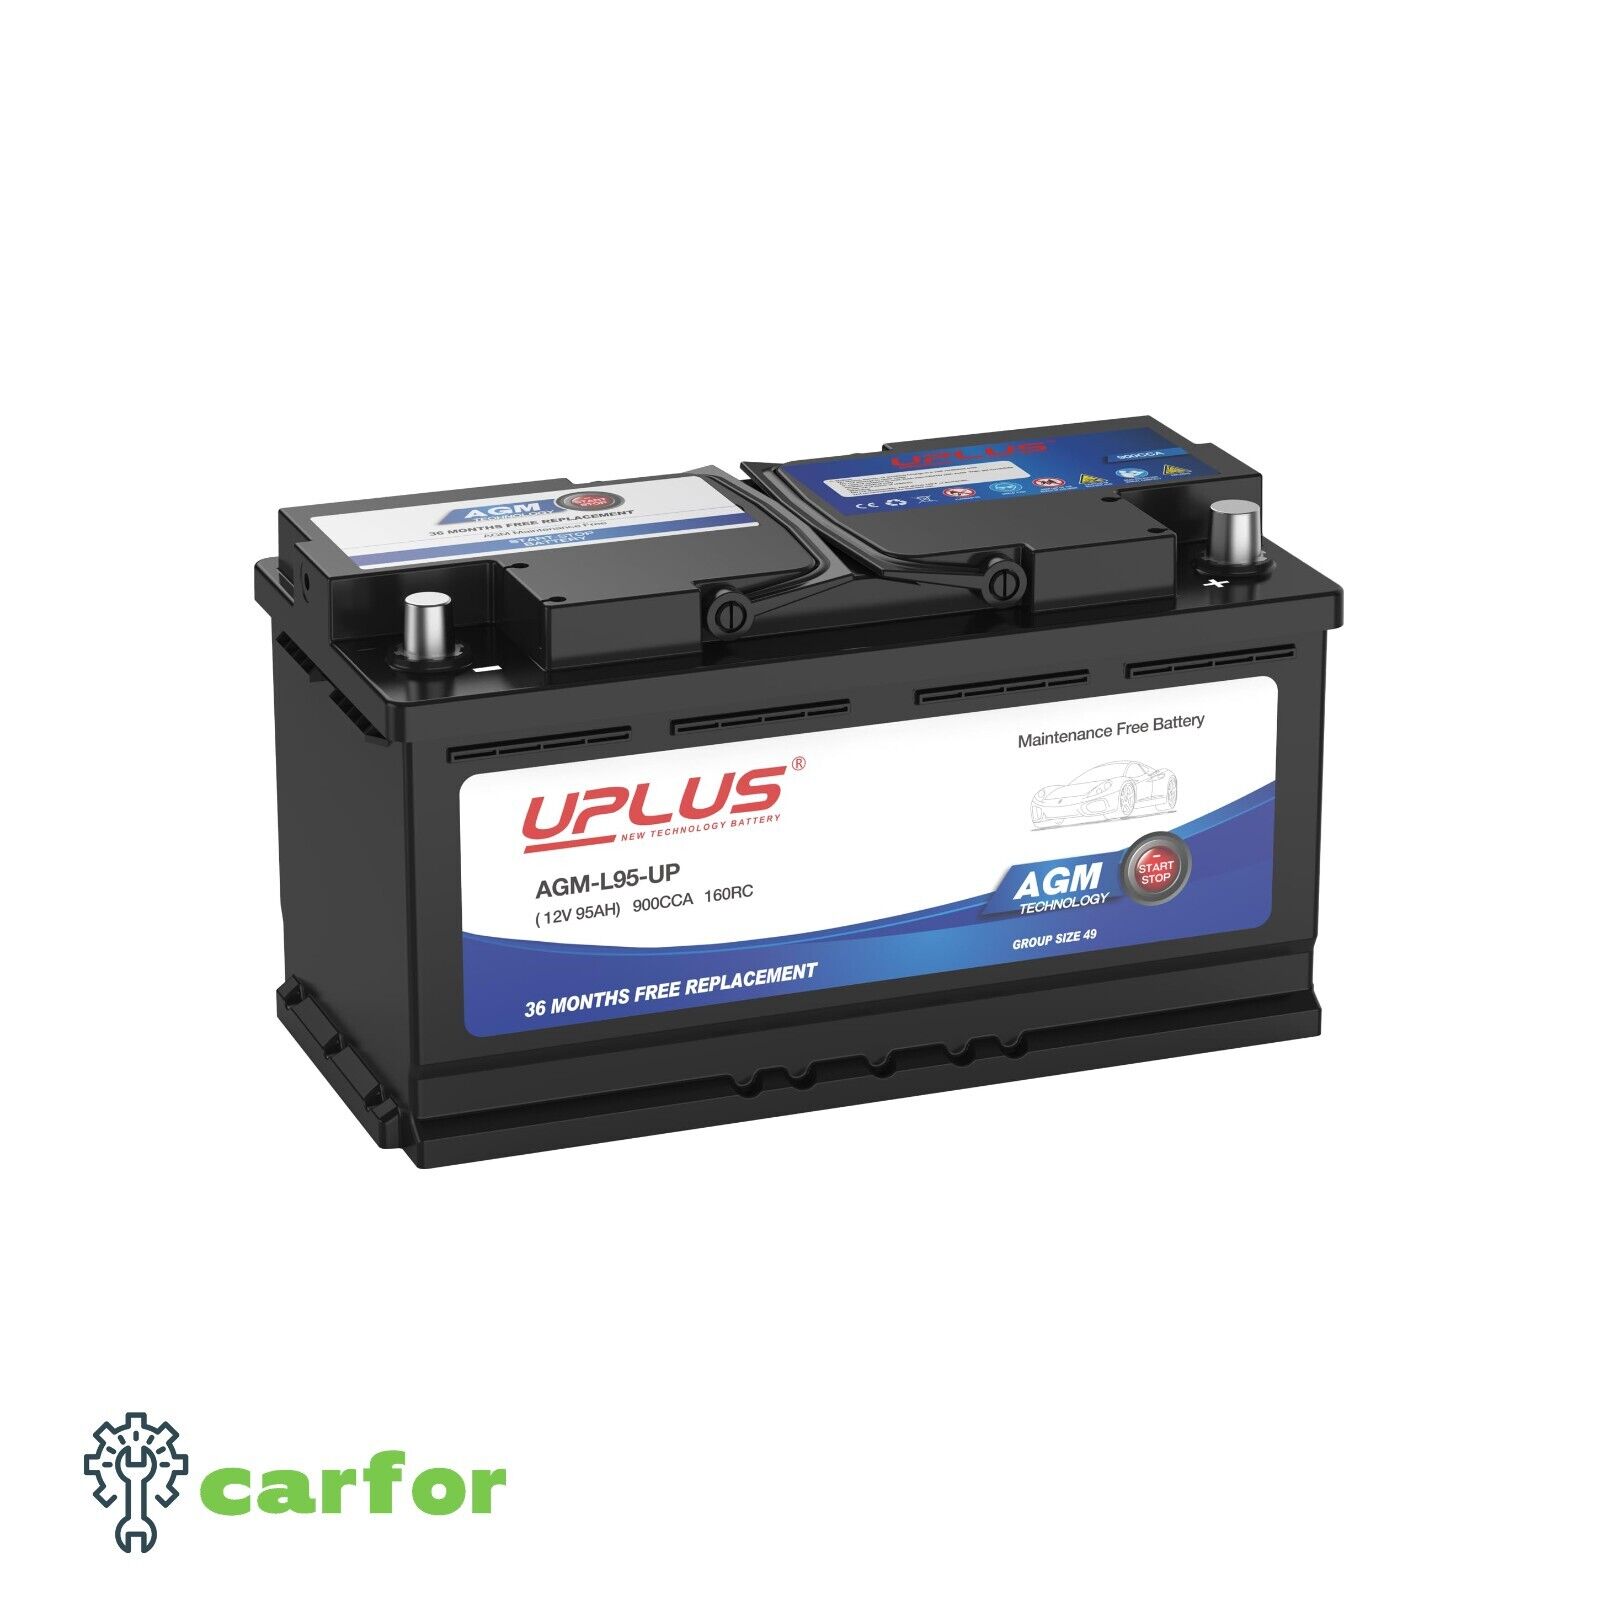 UPLUS BCI Group 48 Car Battery, AGM-L70-M Maintenance Free 12V 70Ah